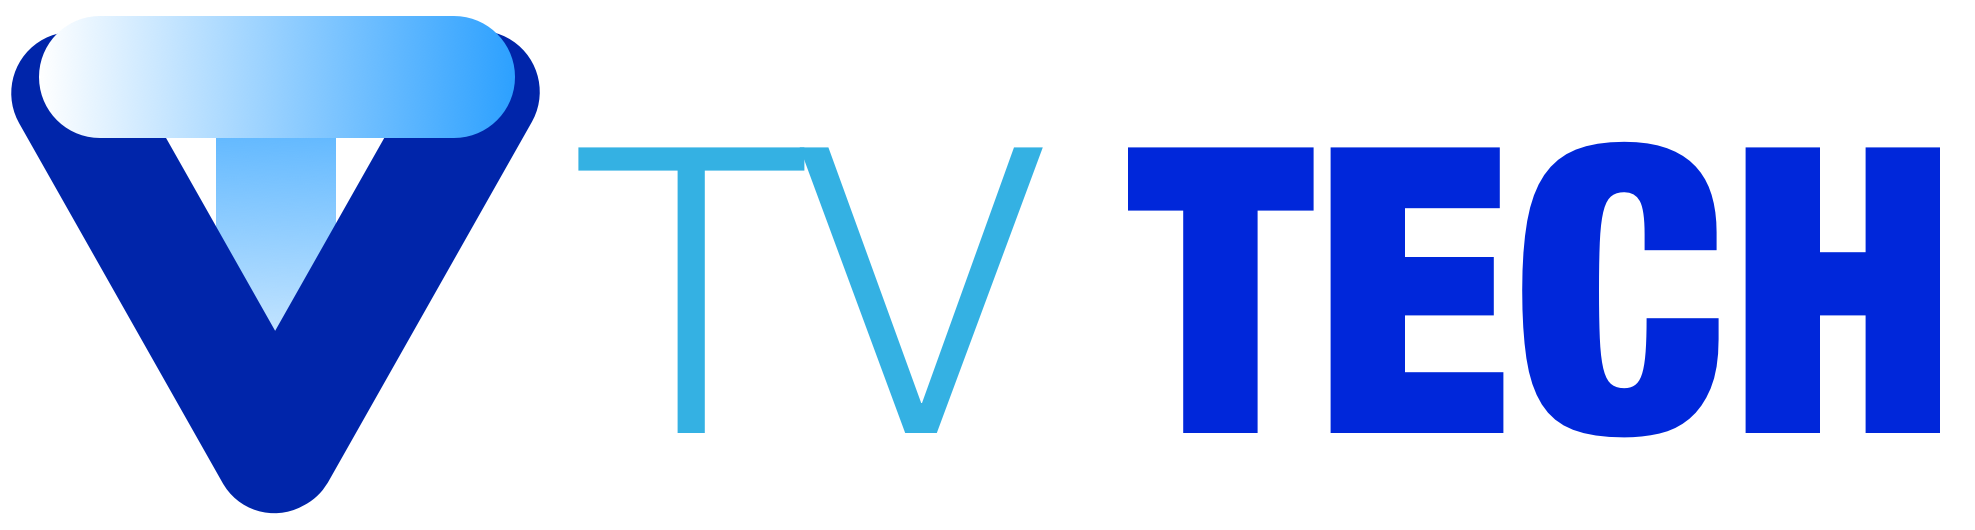 TvTech.nl